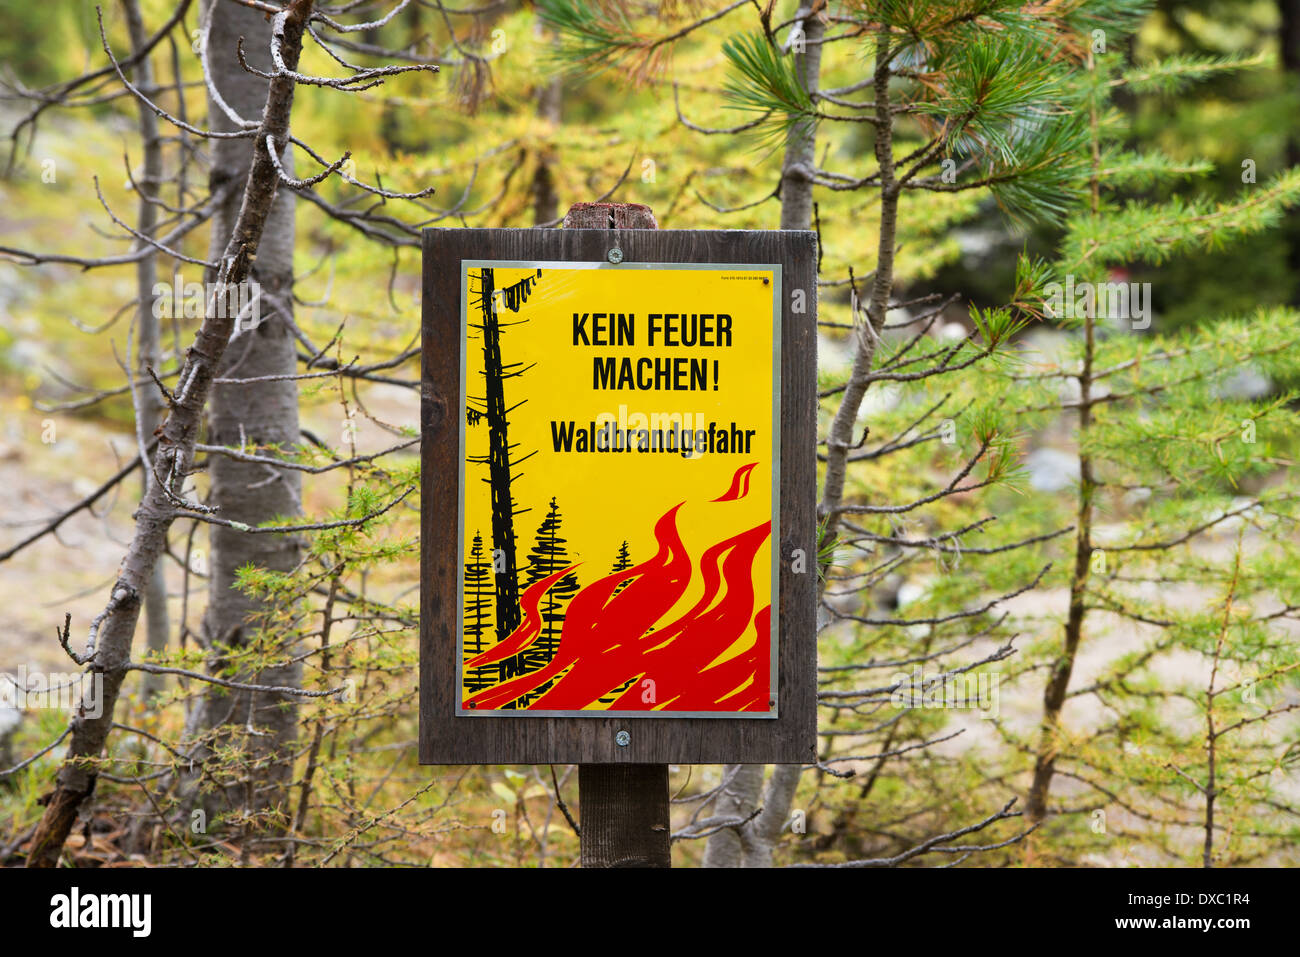 Kein Feuer machen, Waldbrandgefahr - signe pour la prévention des incendies de forêt, Valais, Alpes Suisses, Suisse, Europe Banque D'Images